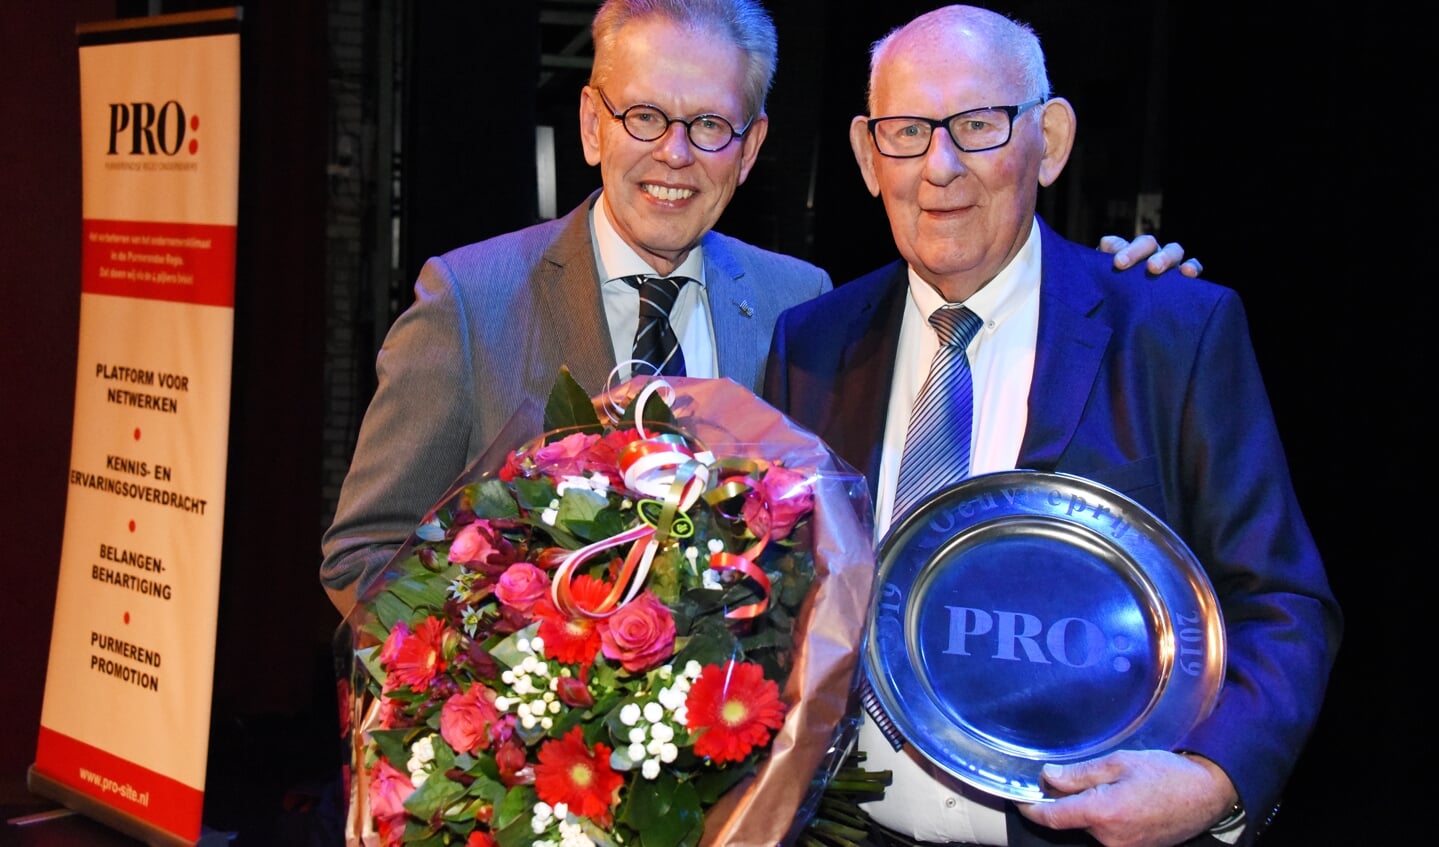 Vorig jaar kreeg Jan Kuiper al een Koninklijke Onderscheiding. De motor van de kortebaandraverij kreeg zaterdagavond ook de oeuvreprijs voor zijn jarenlange verdiensten voor de stad.nten a